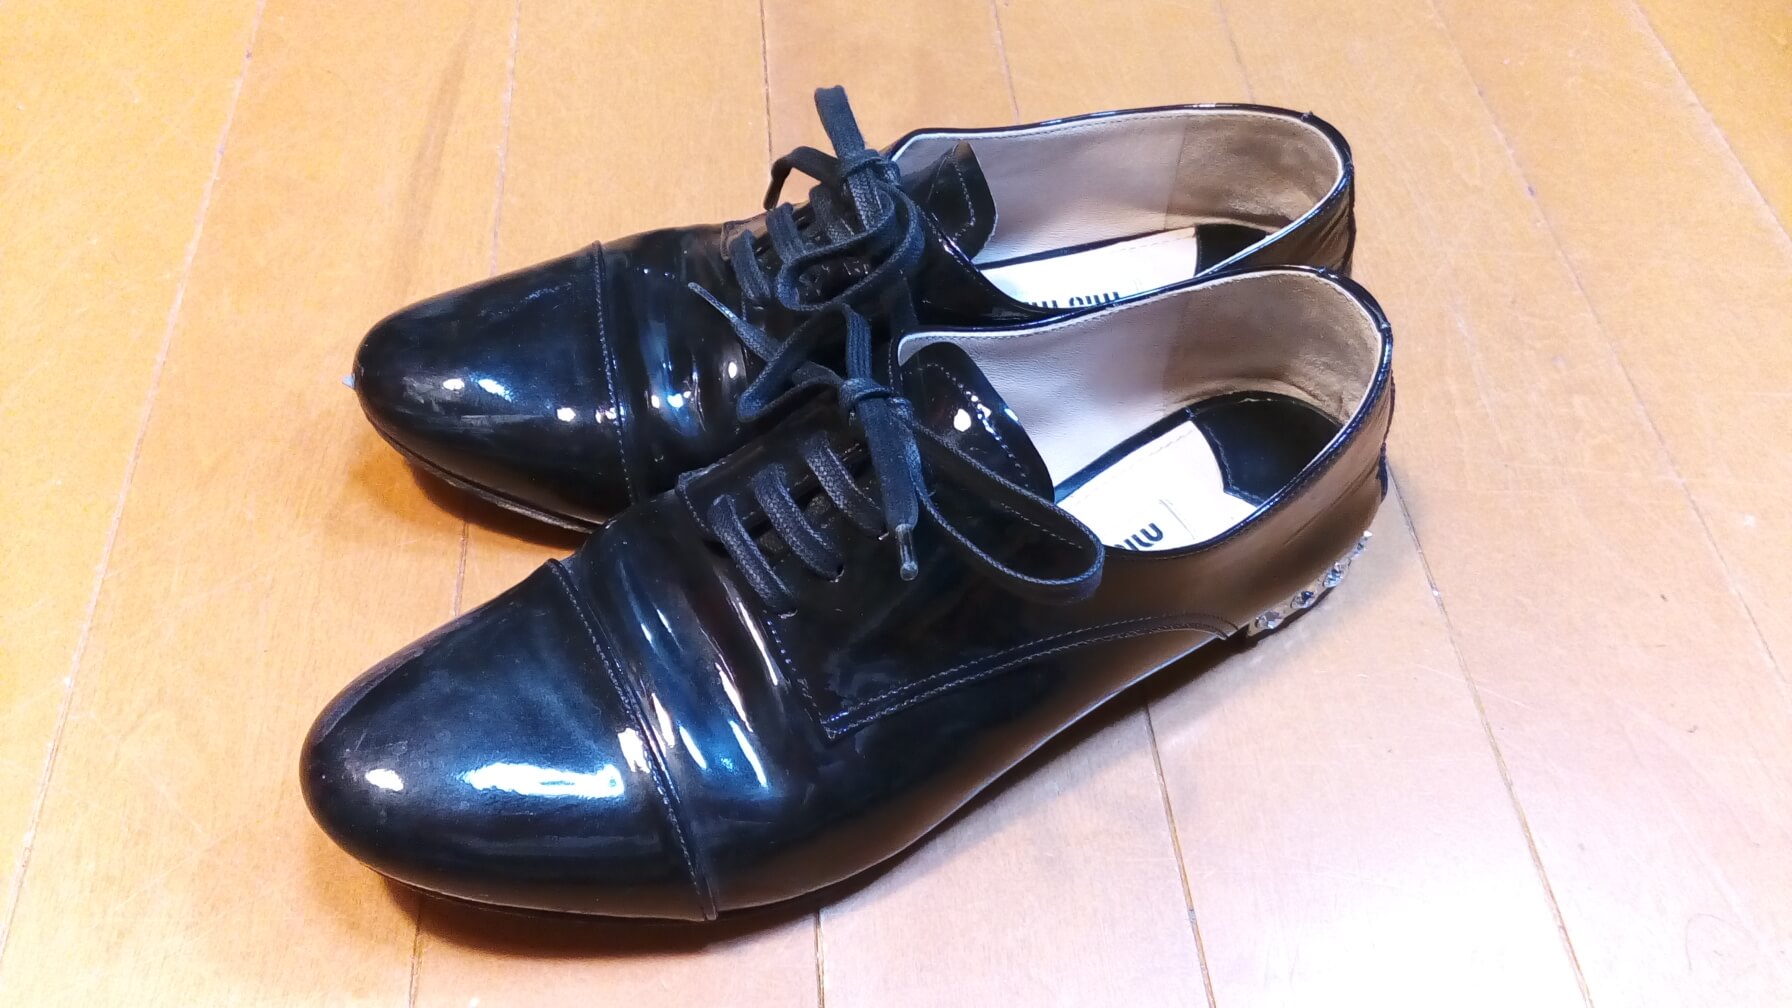 靴修理品117 Miumiuのエナメル靴のアッパー補修とゴム半張りの靴修理 靴修理店の和靴工房